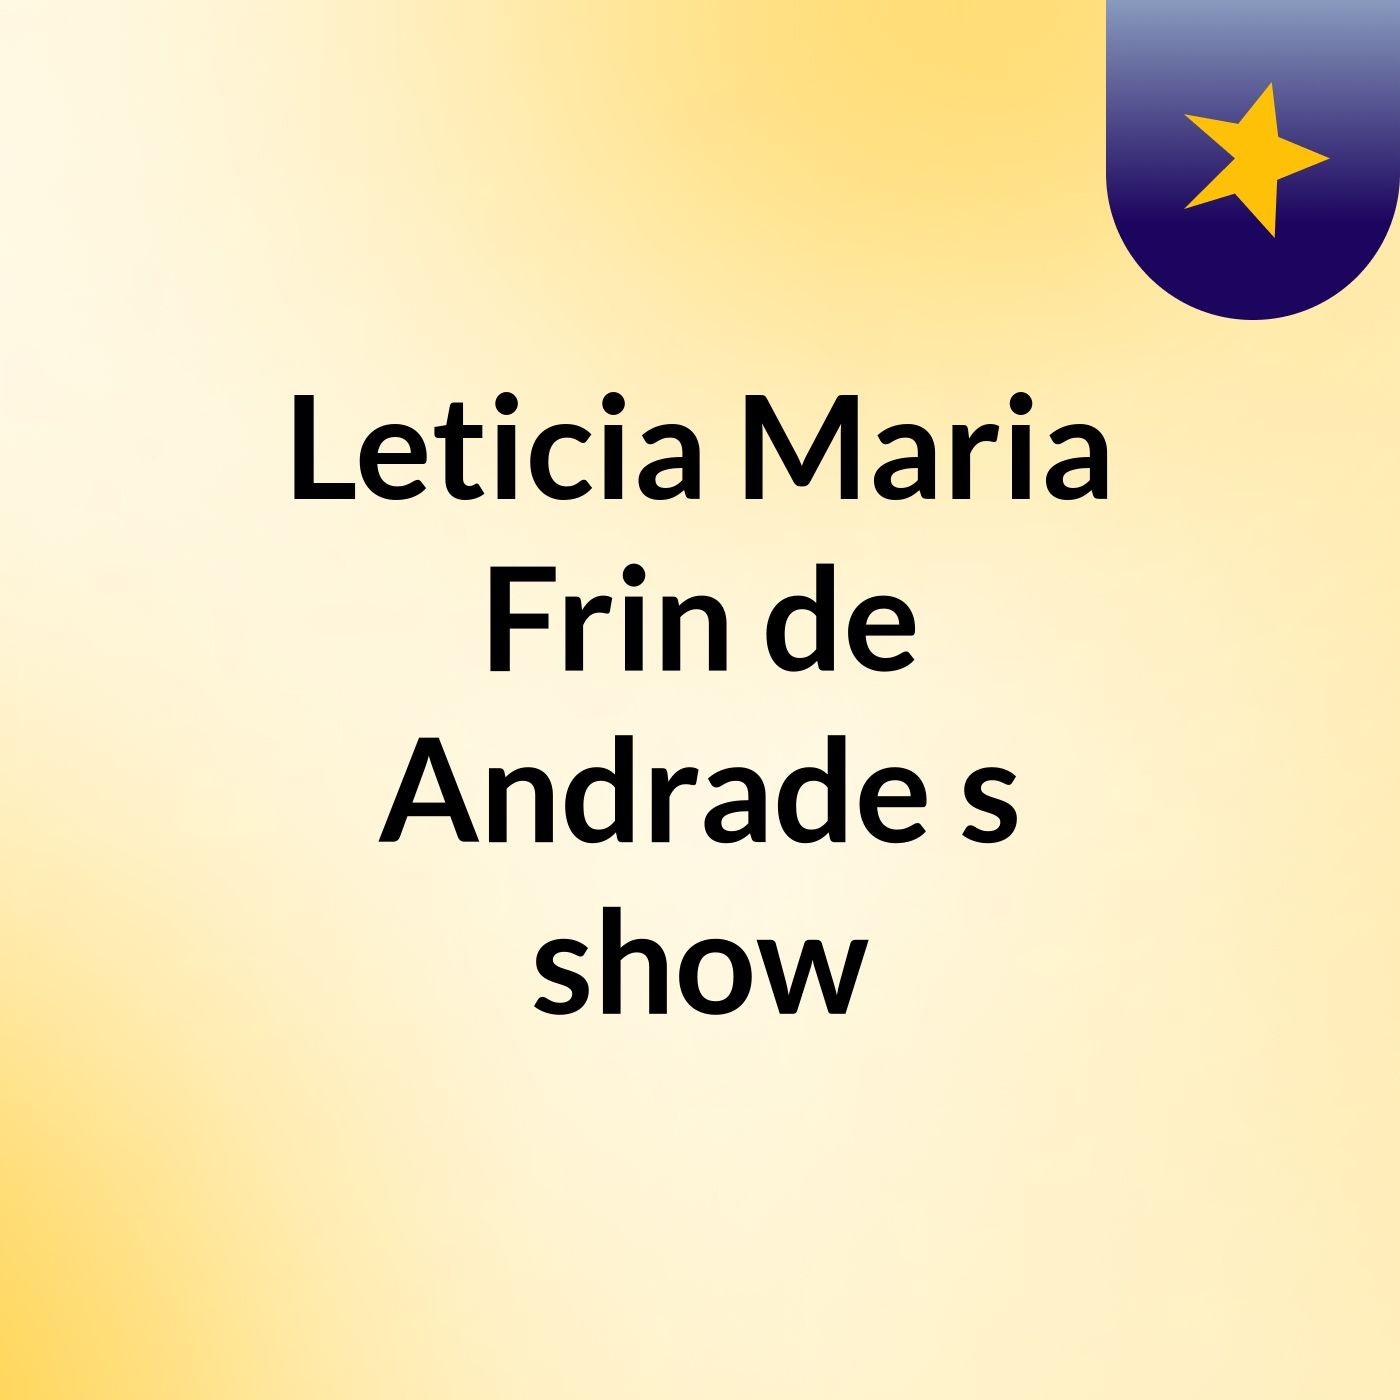 Leticia Maria Frin de Andrade 's show